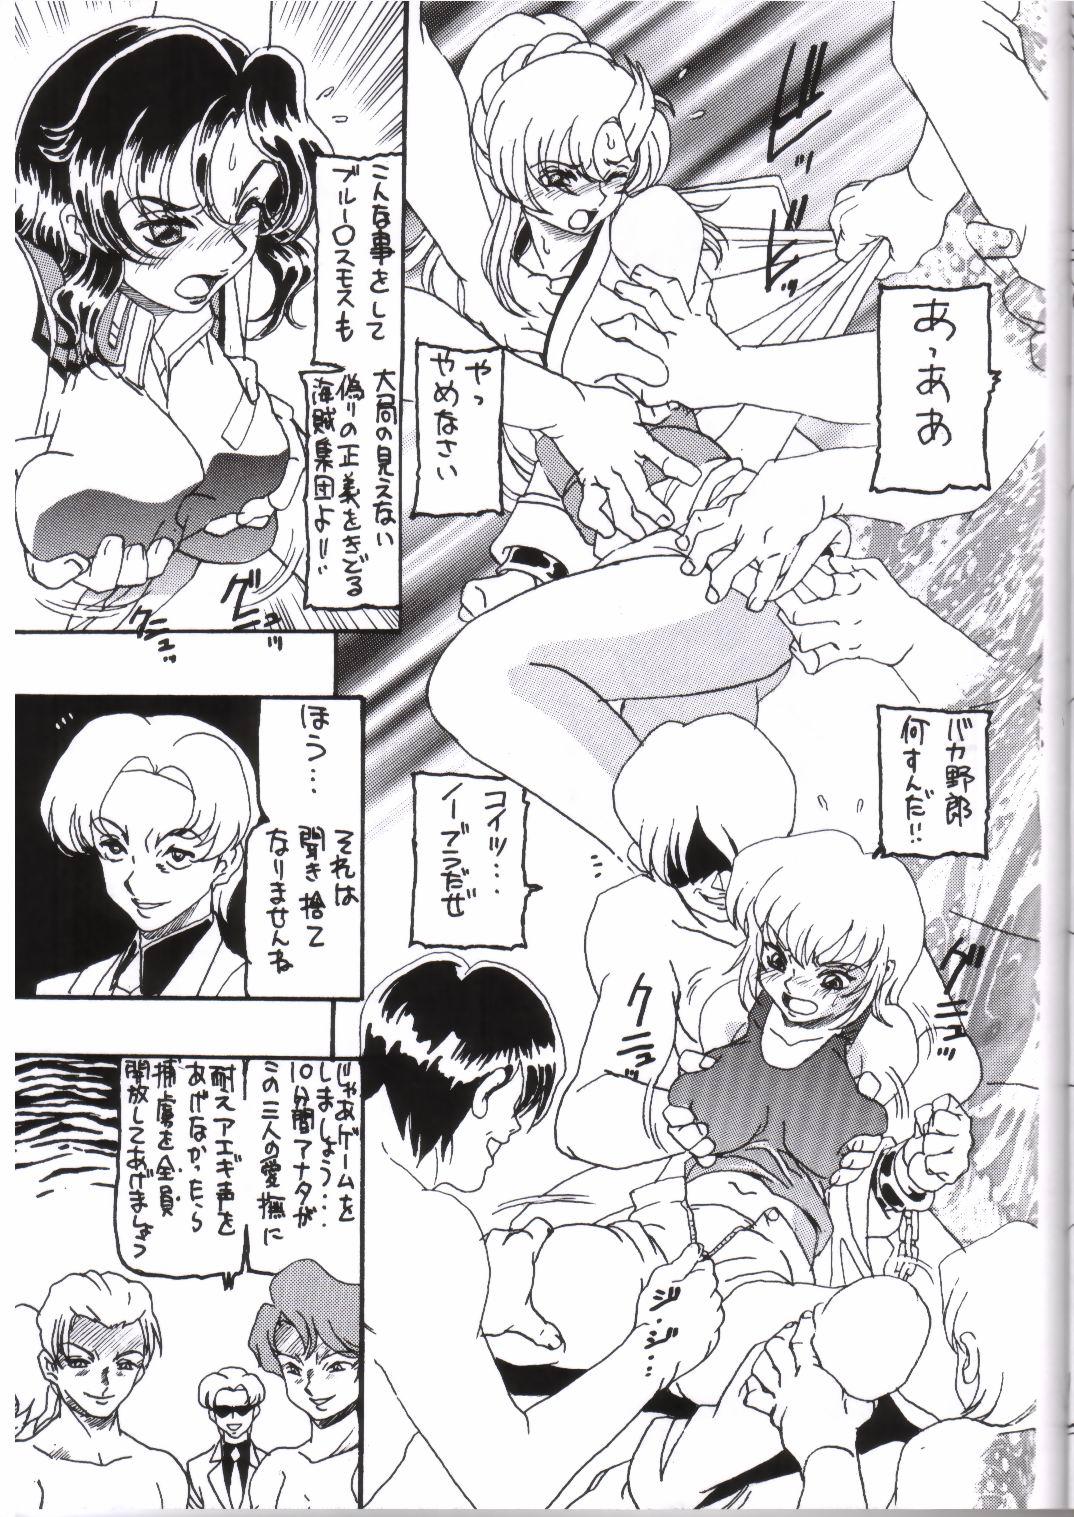 Her Moon Shine 9 - Gundam seed Dance - Page 8